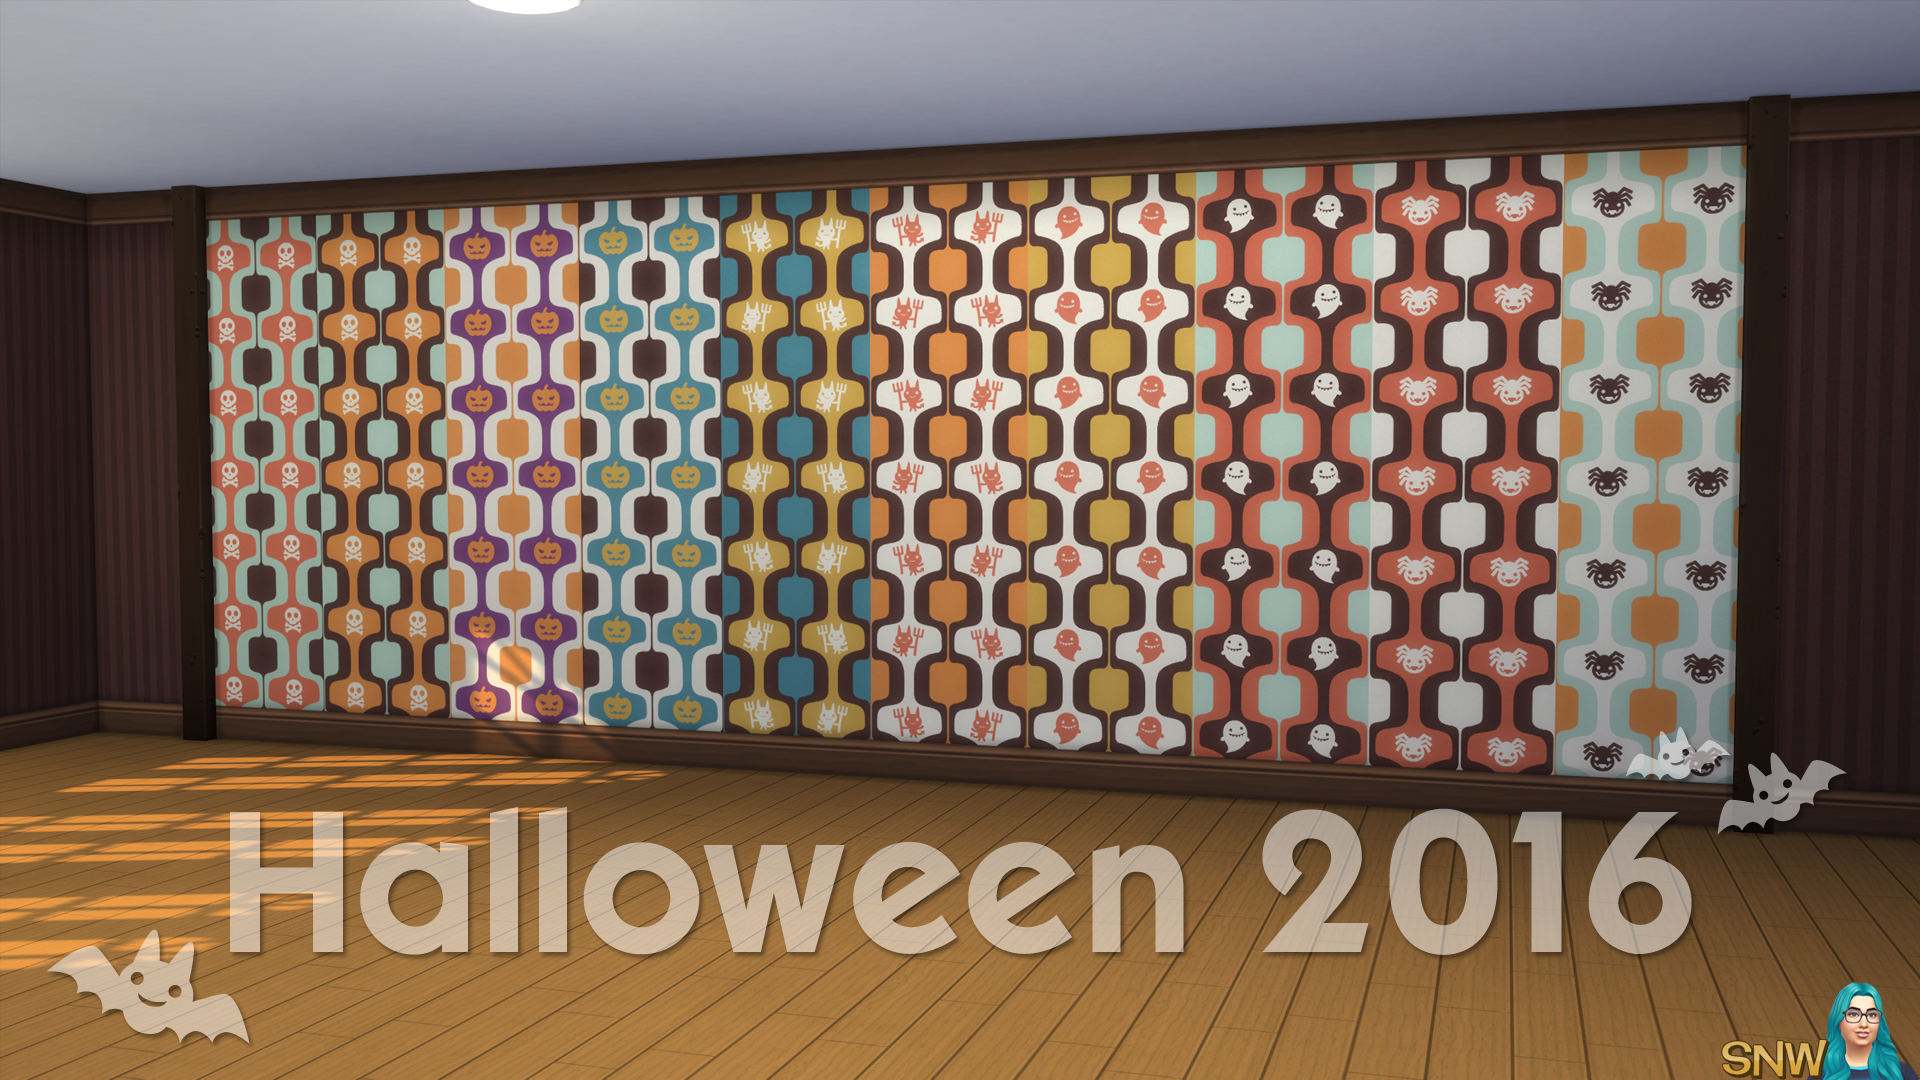 Halloween 2016 Walls #1